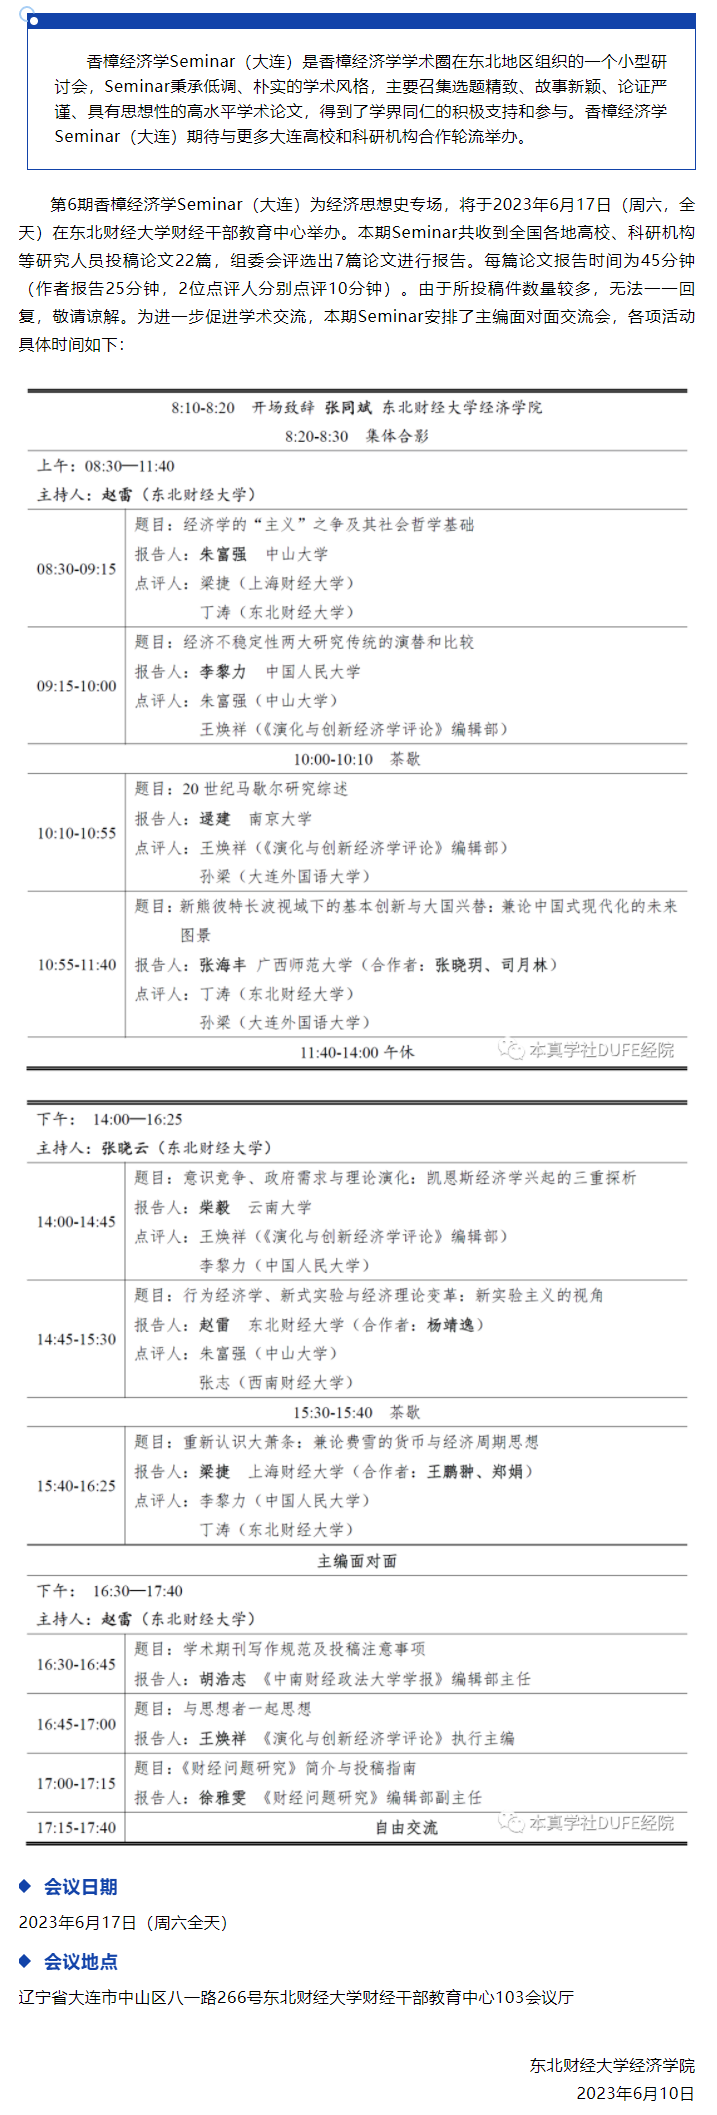 第6期香樟经济学Seminar（大连）线下会议日程.png